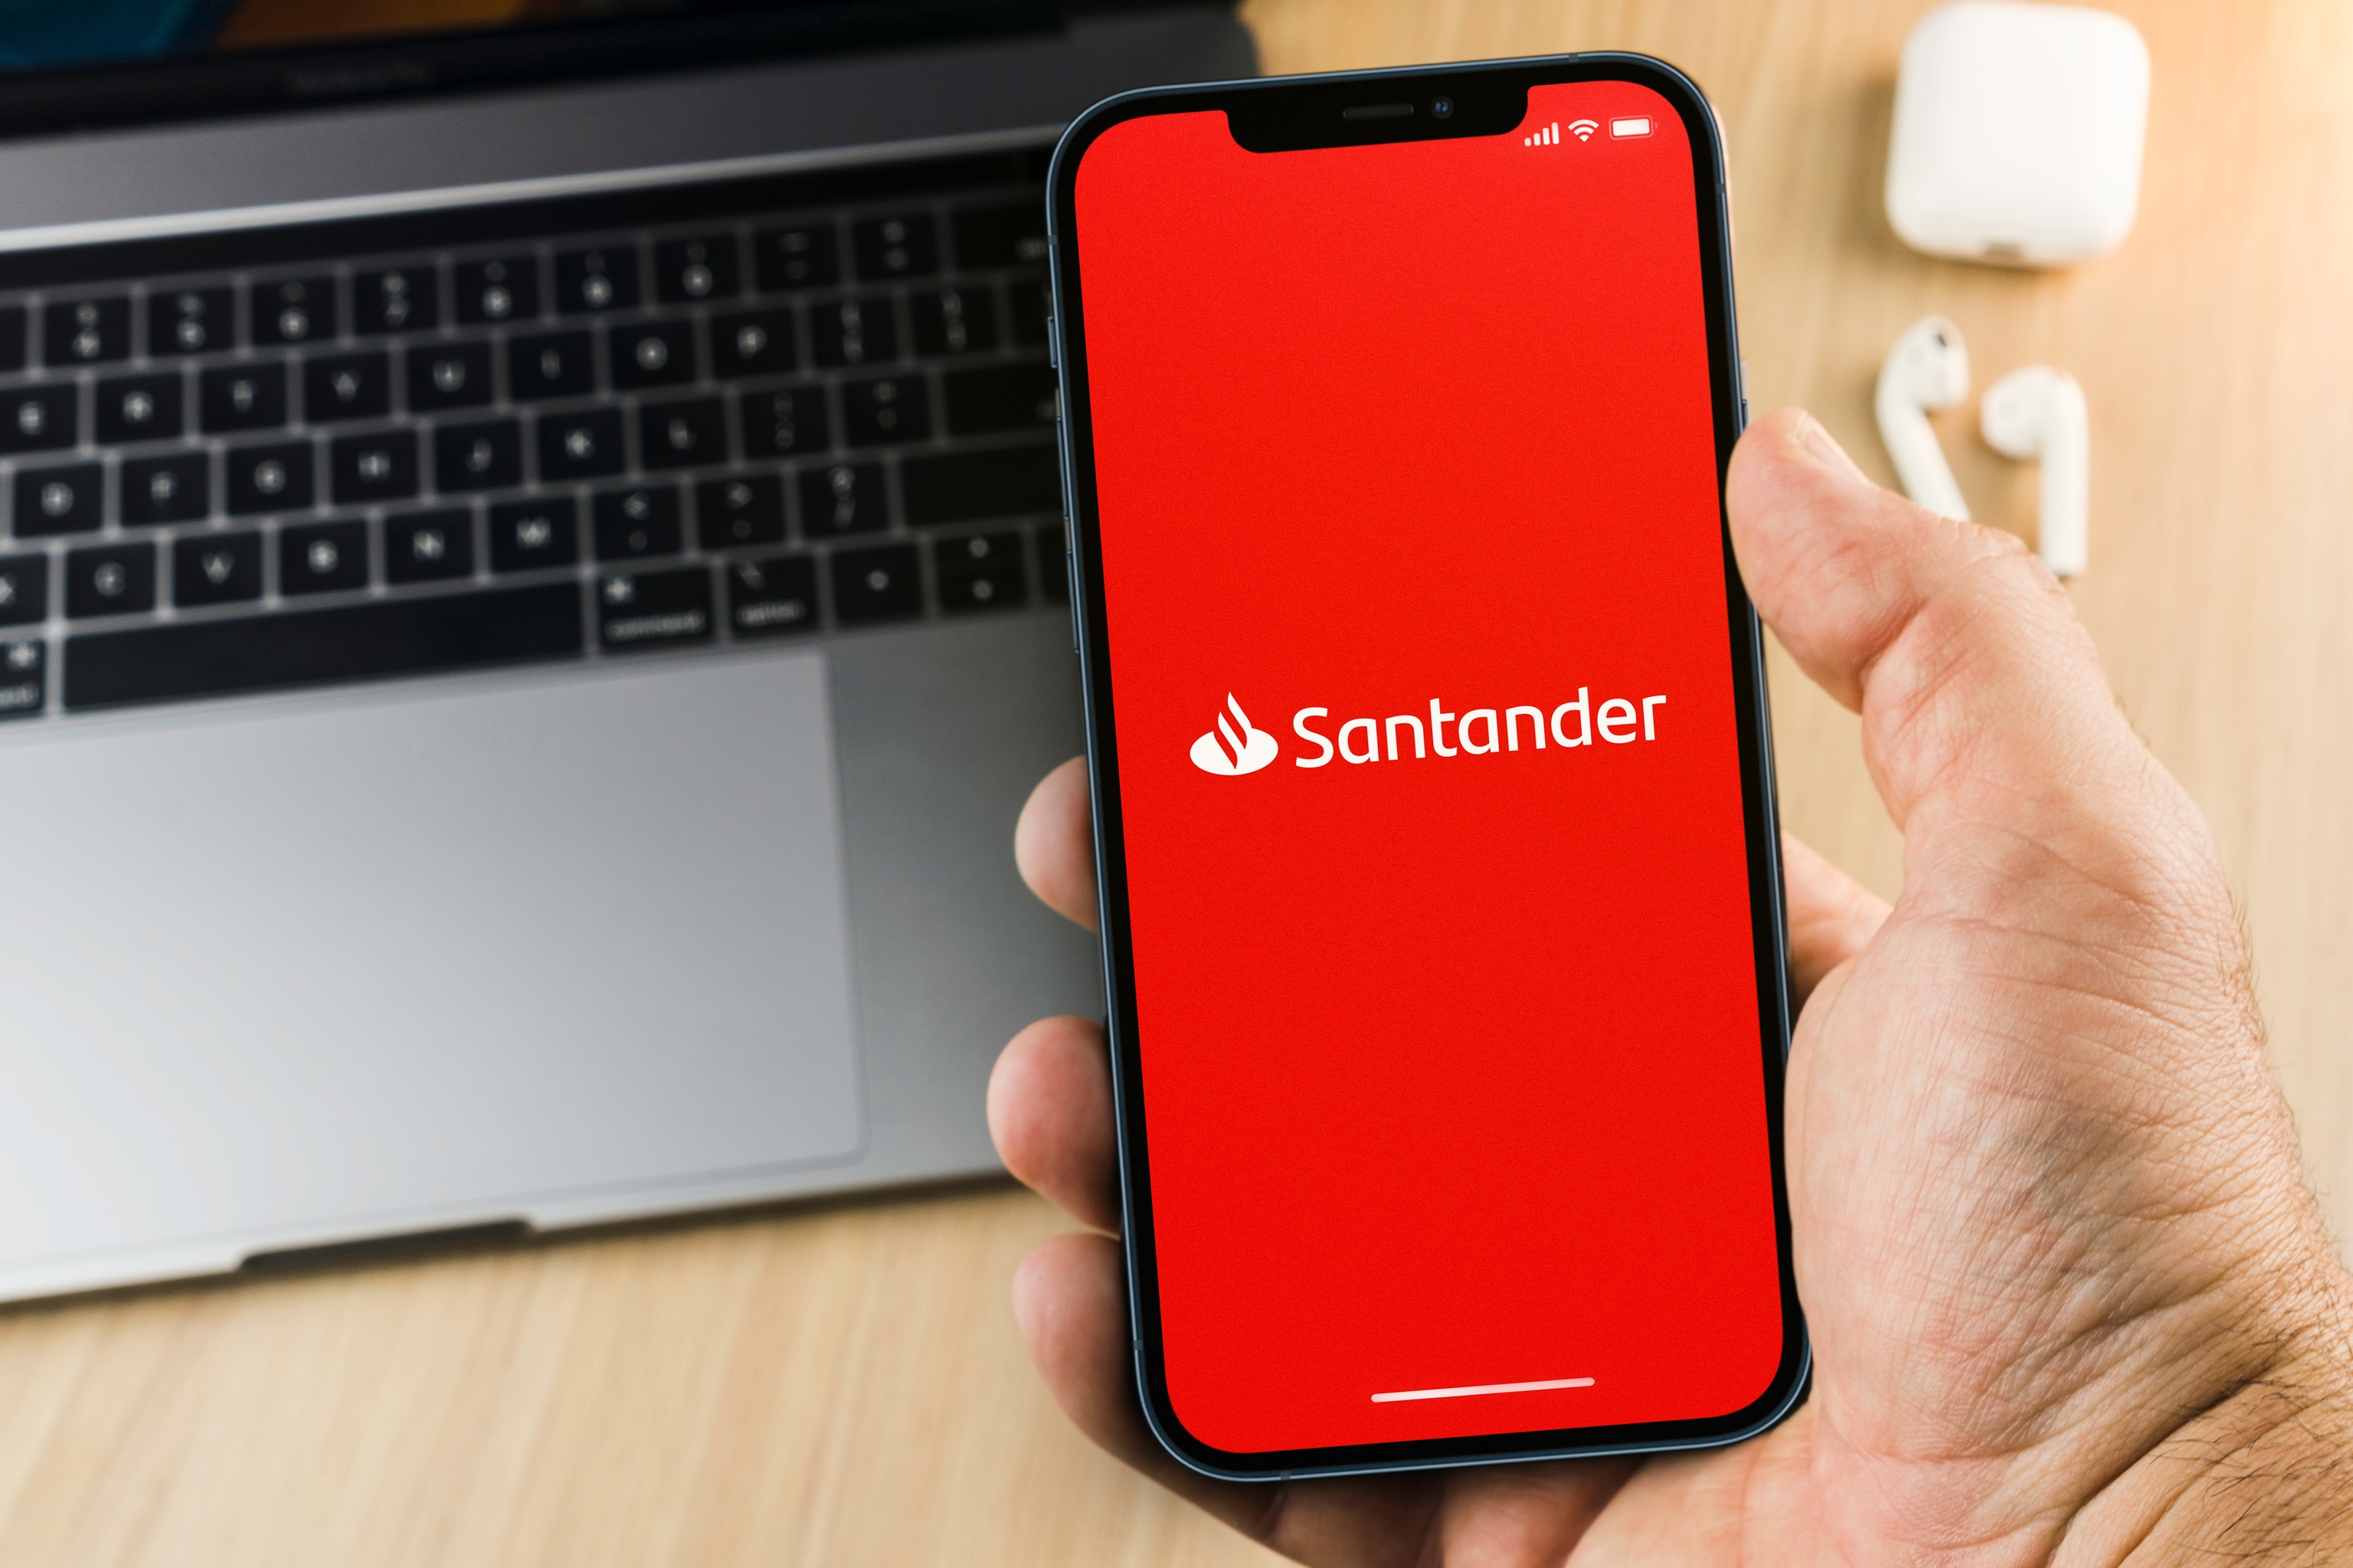 El Santander sufre un «error informático» en su app que duplica la visualización de los movimientos de los usuarios